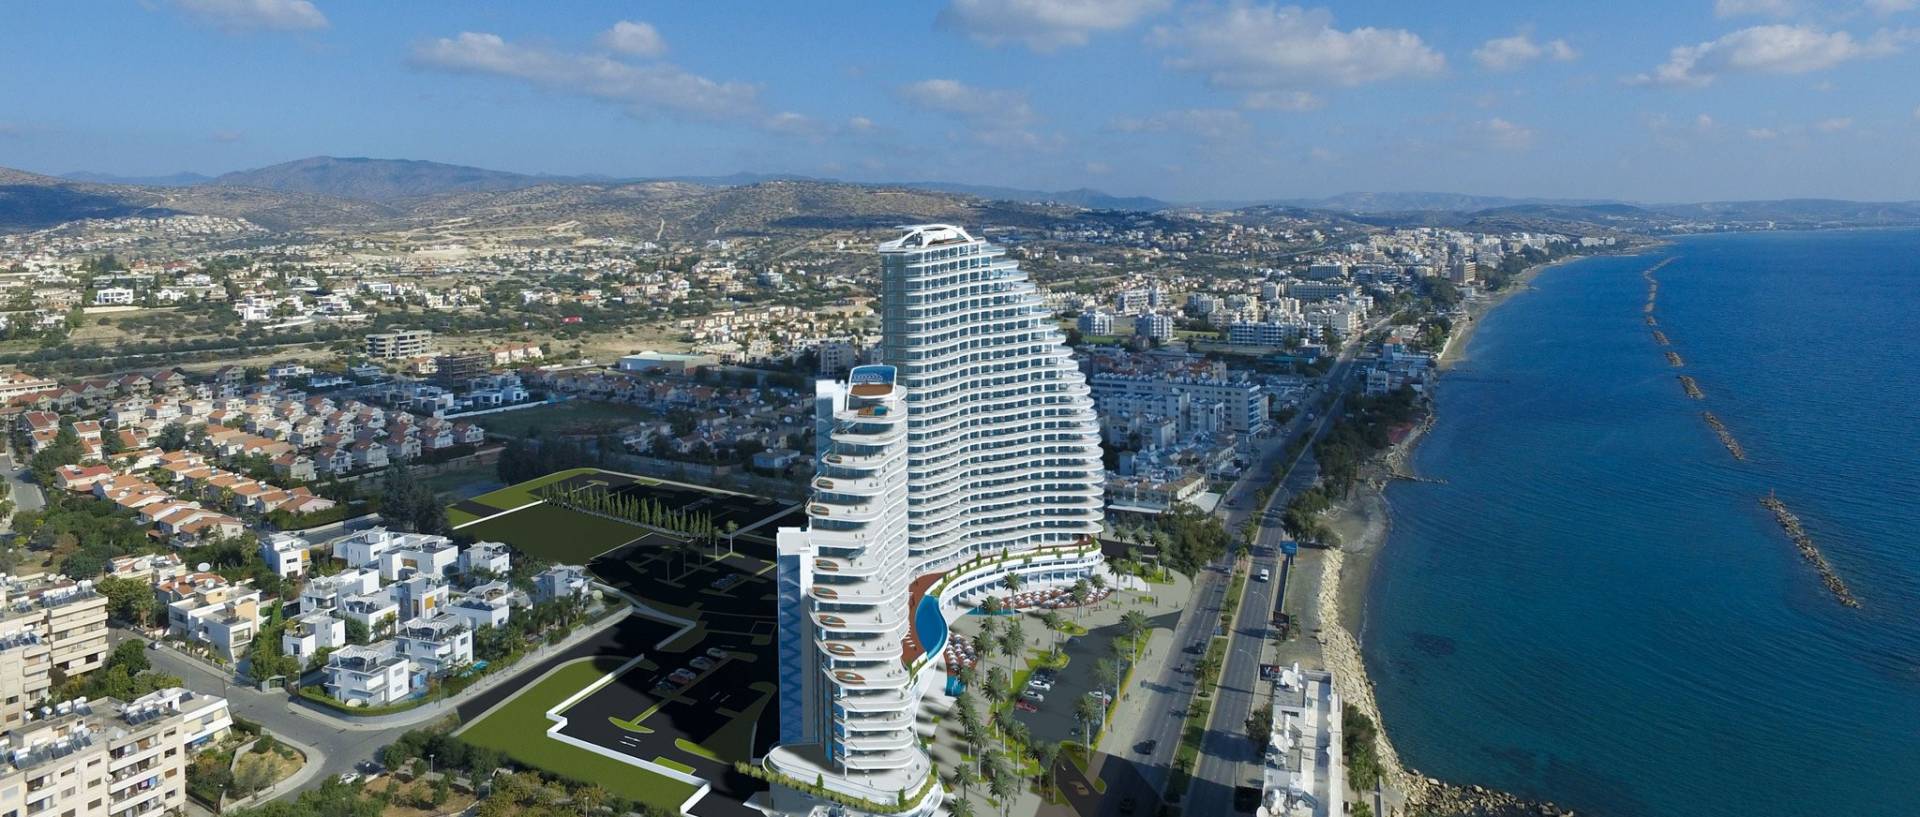 Chính sách của chính phủ Síp trong việc thu hút đầu tư nước ngoài